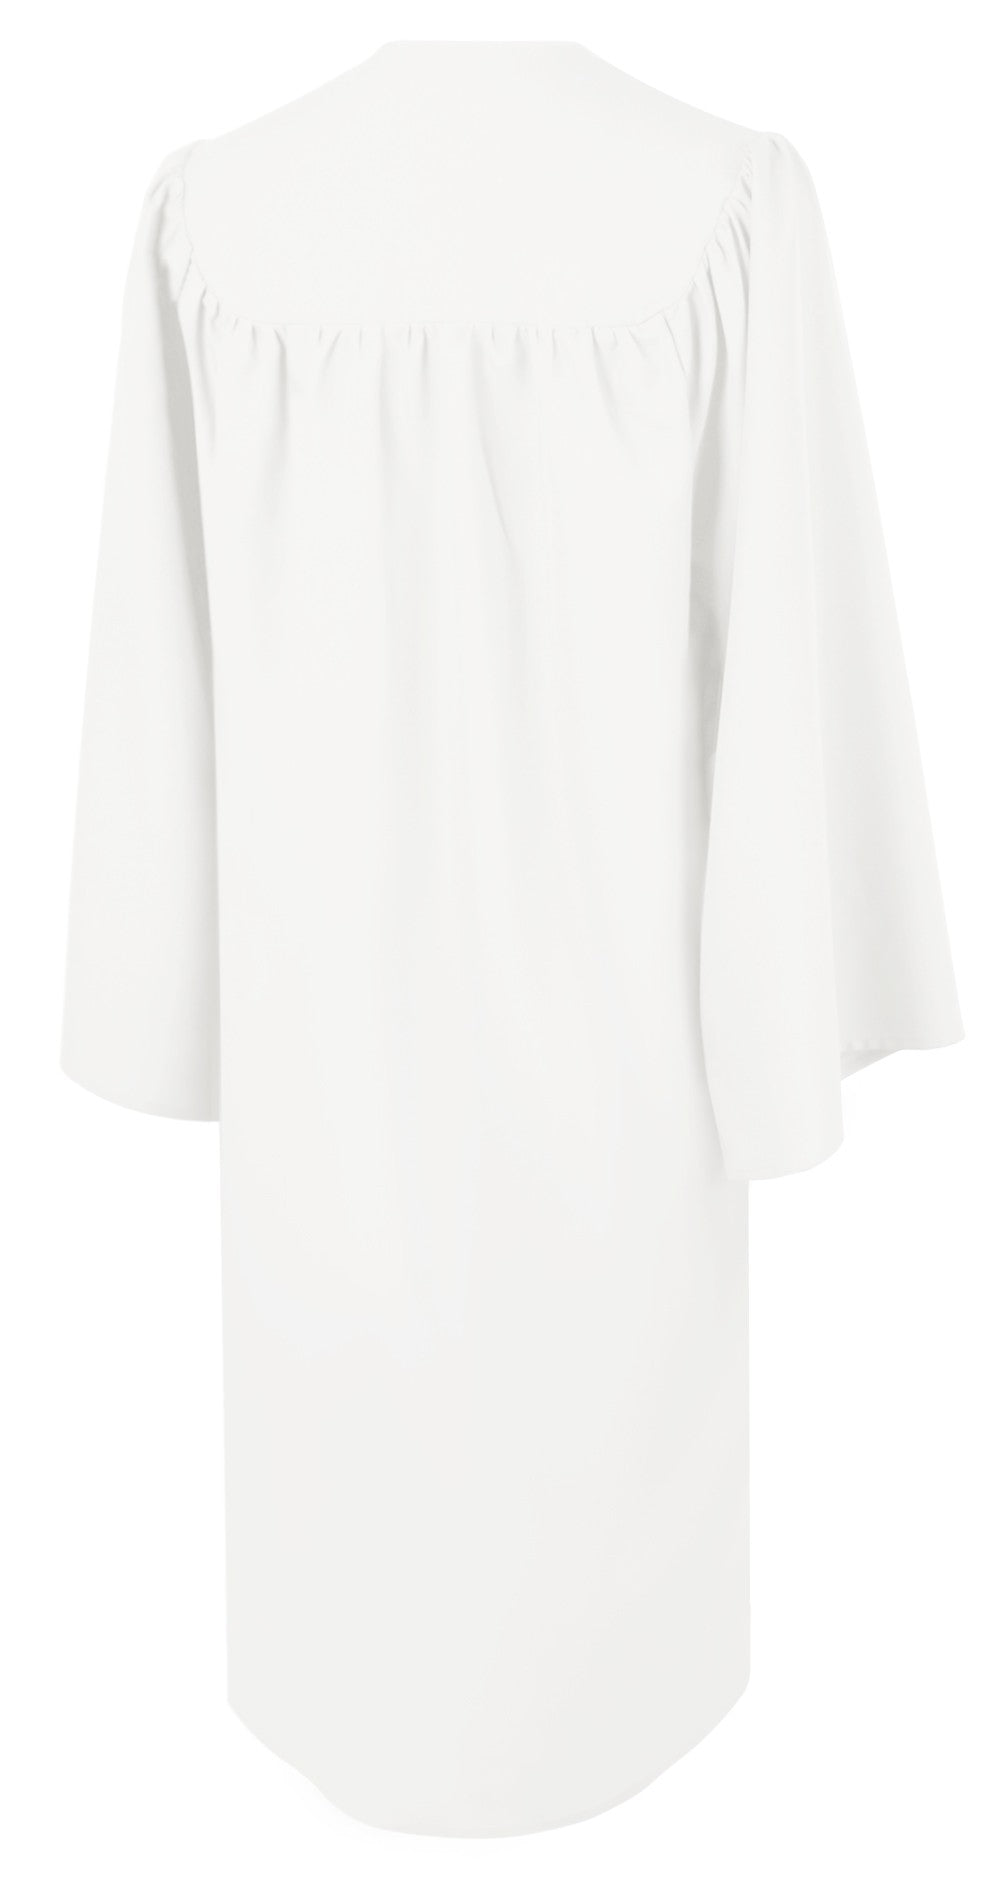 Matte White Choir Robe - Church Choir Robes - ChoirBuy